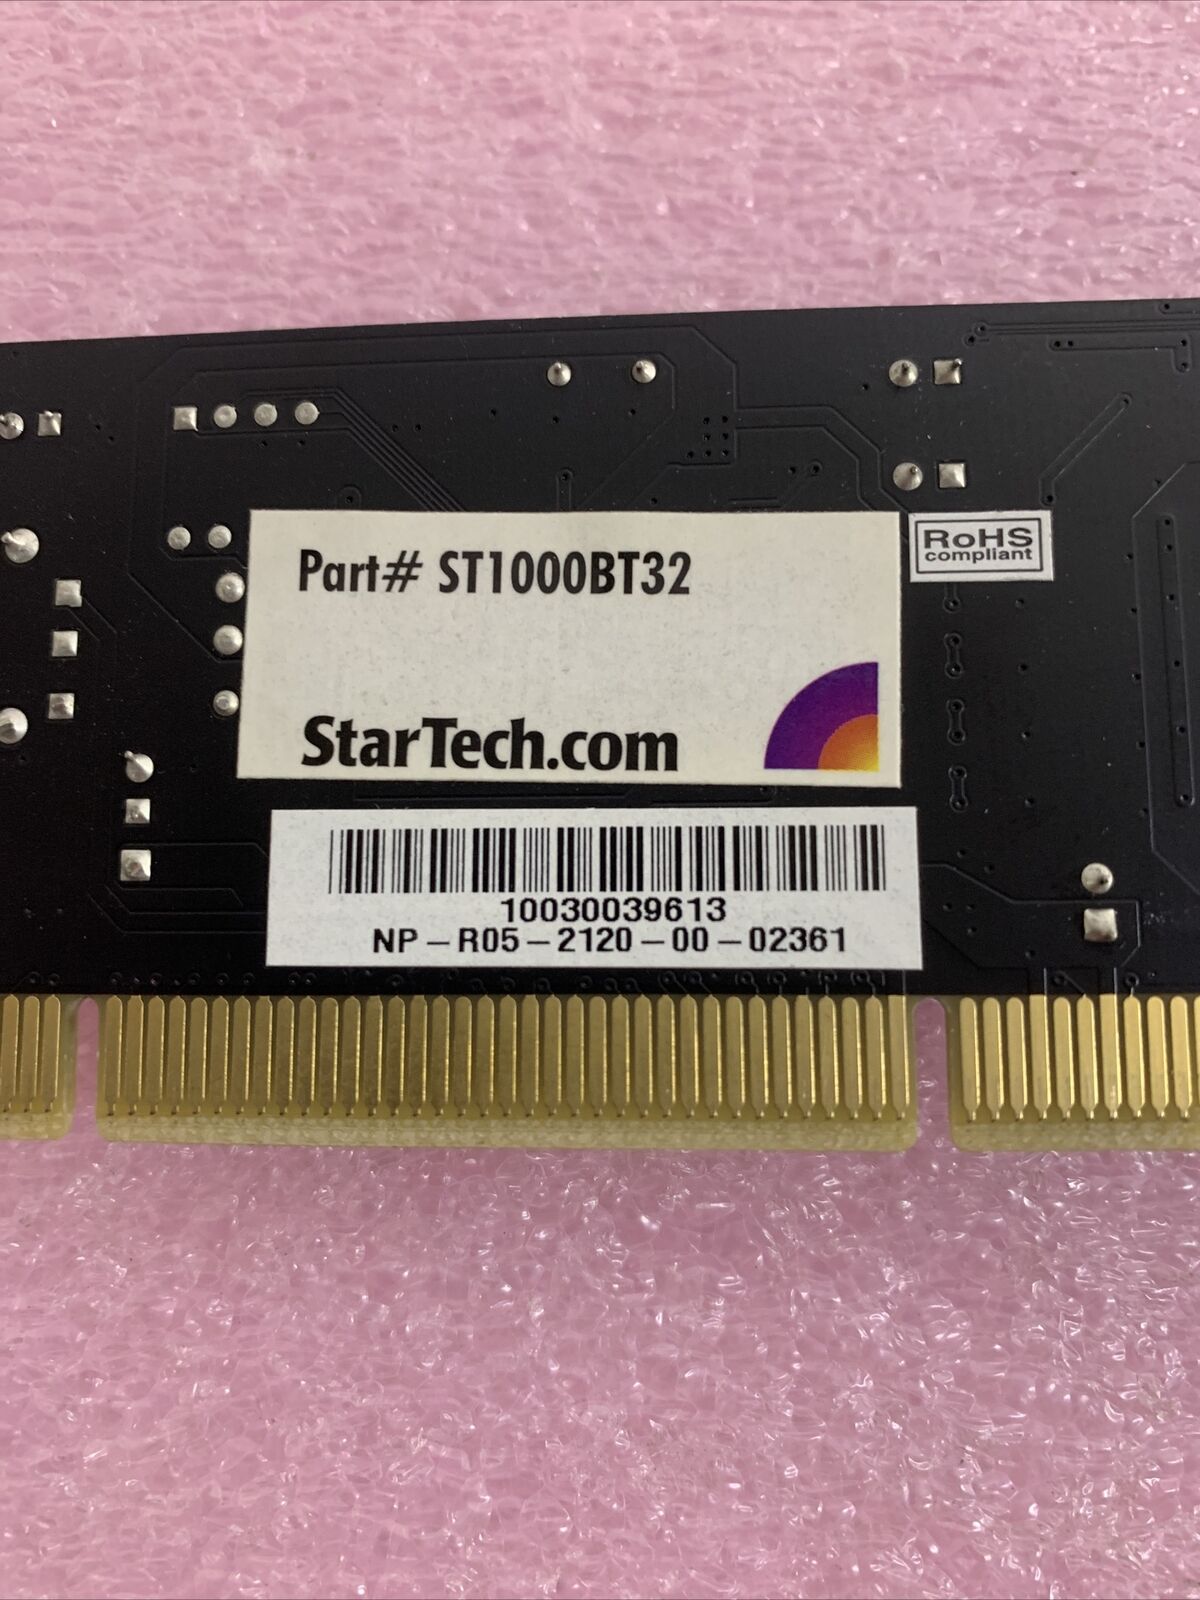 StarTech ST1000BT32 Gigabit Network Ethernet PCI Adapter